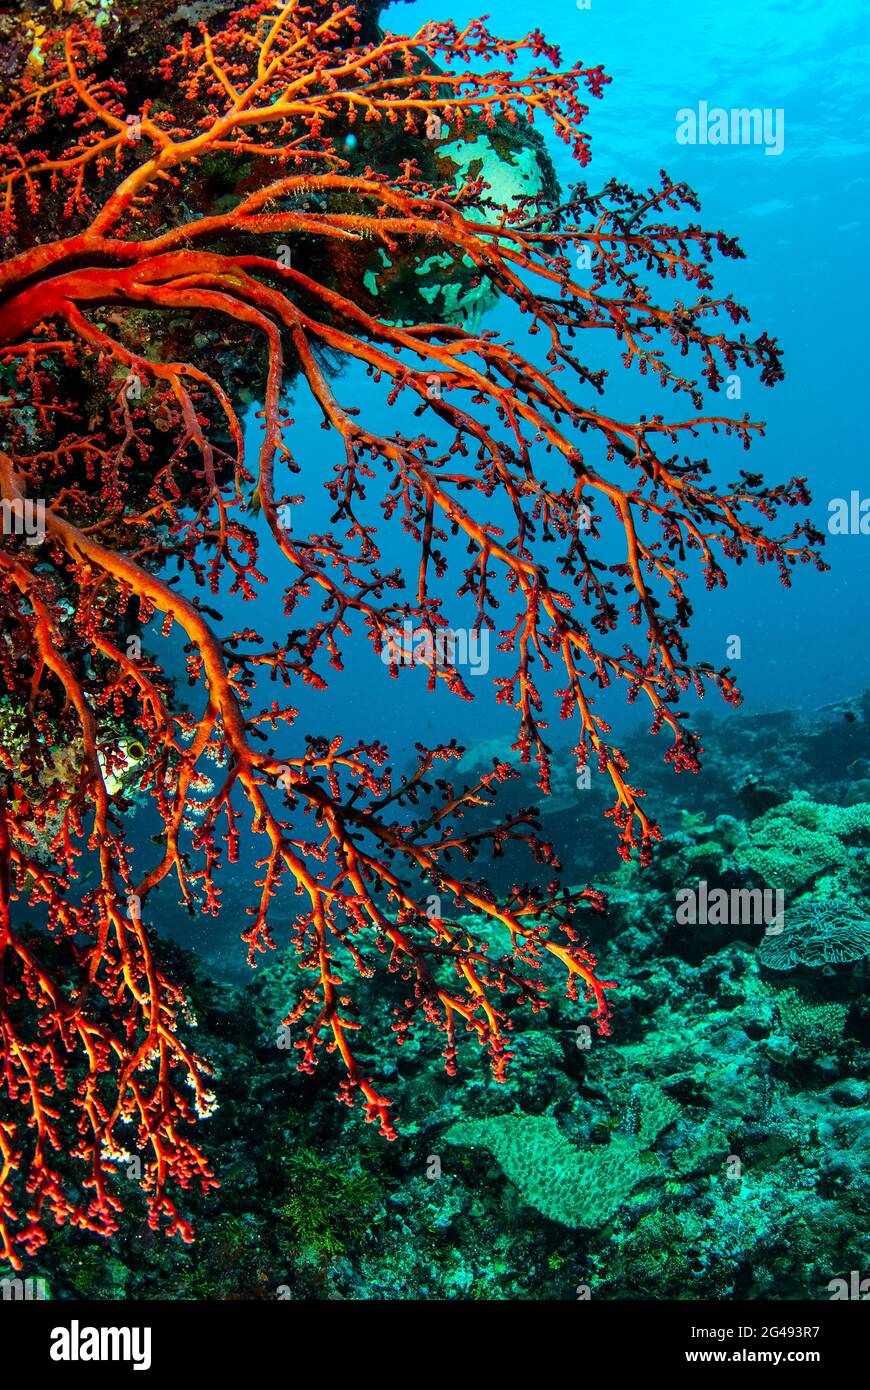 Red sea fan, polyps withdrawn, Solomon Islands Stock Photo